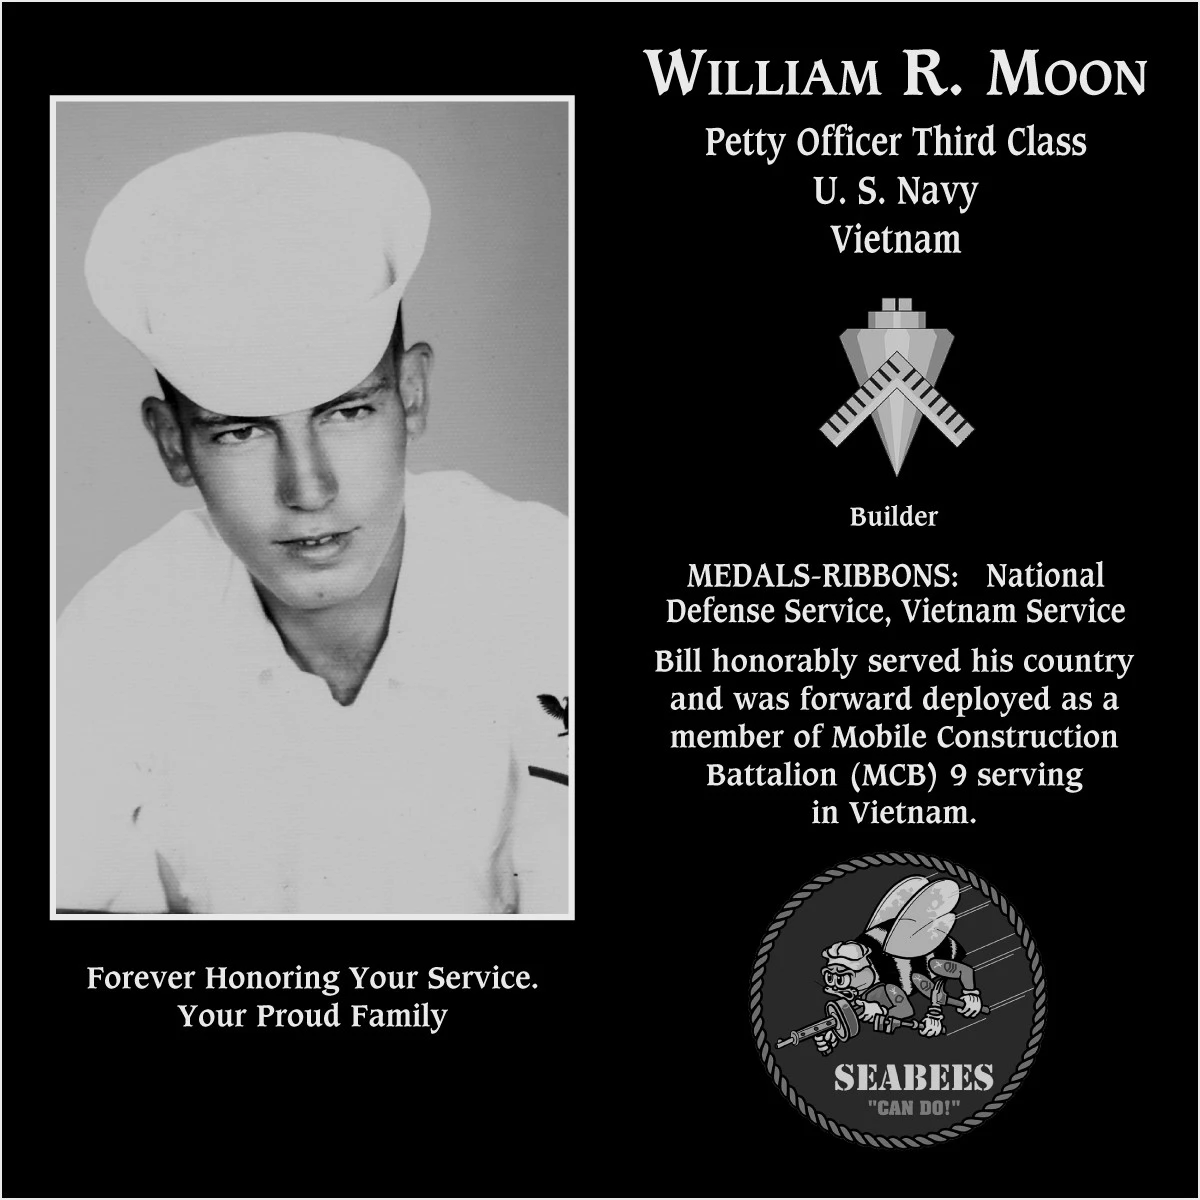 William R. “Bill” Moon